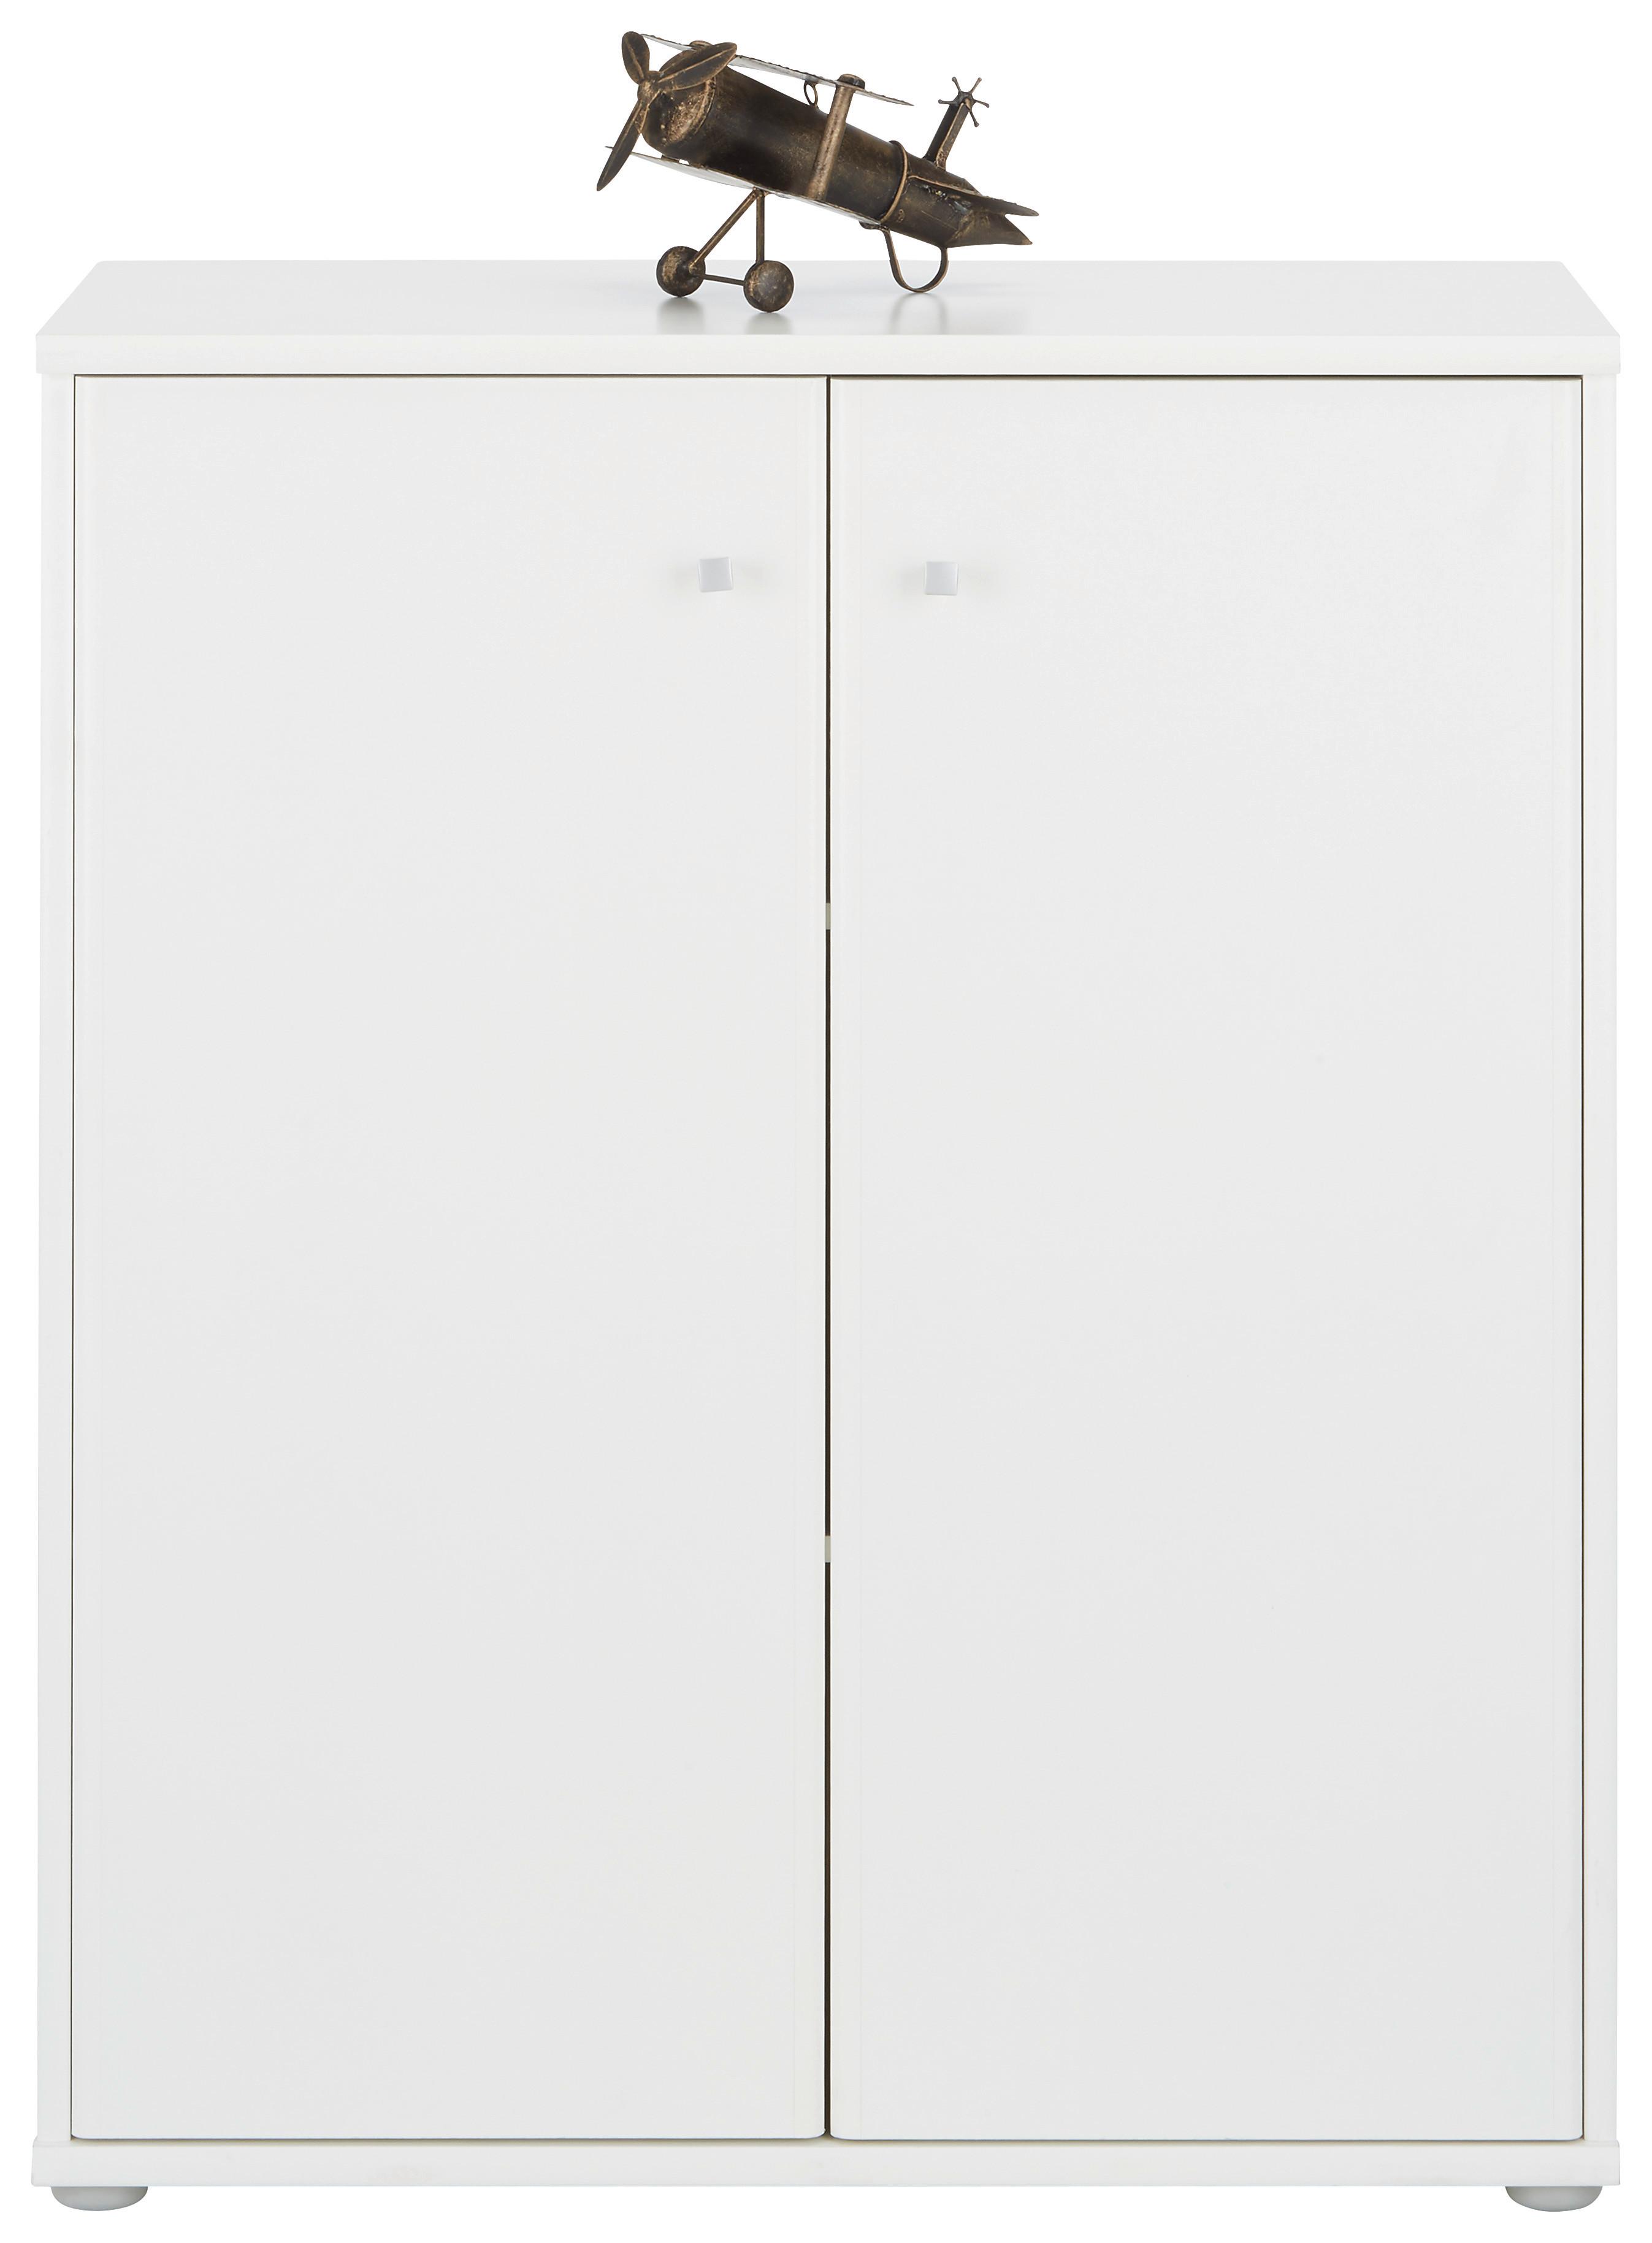 Kommode in Weiß - Weiß/Grau, MODERN, Holzwerkstoff/Kunststoff (72/86/34cm) - Modern Living